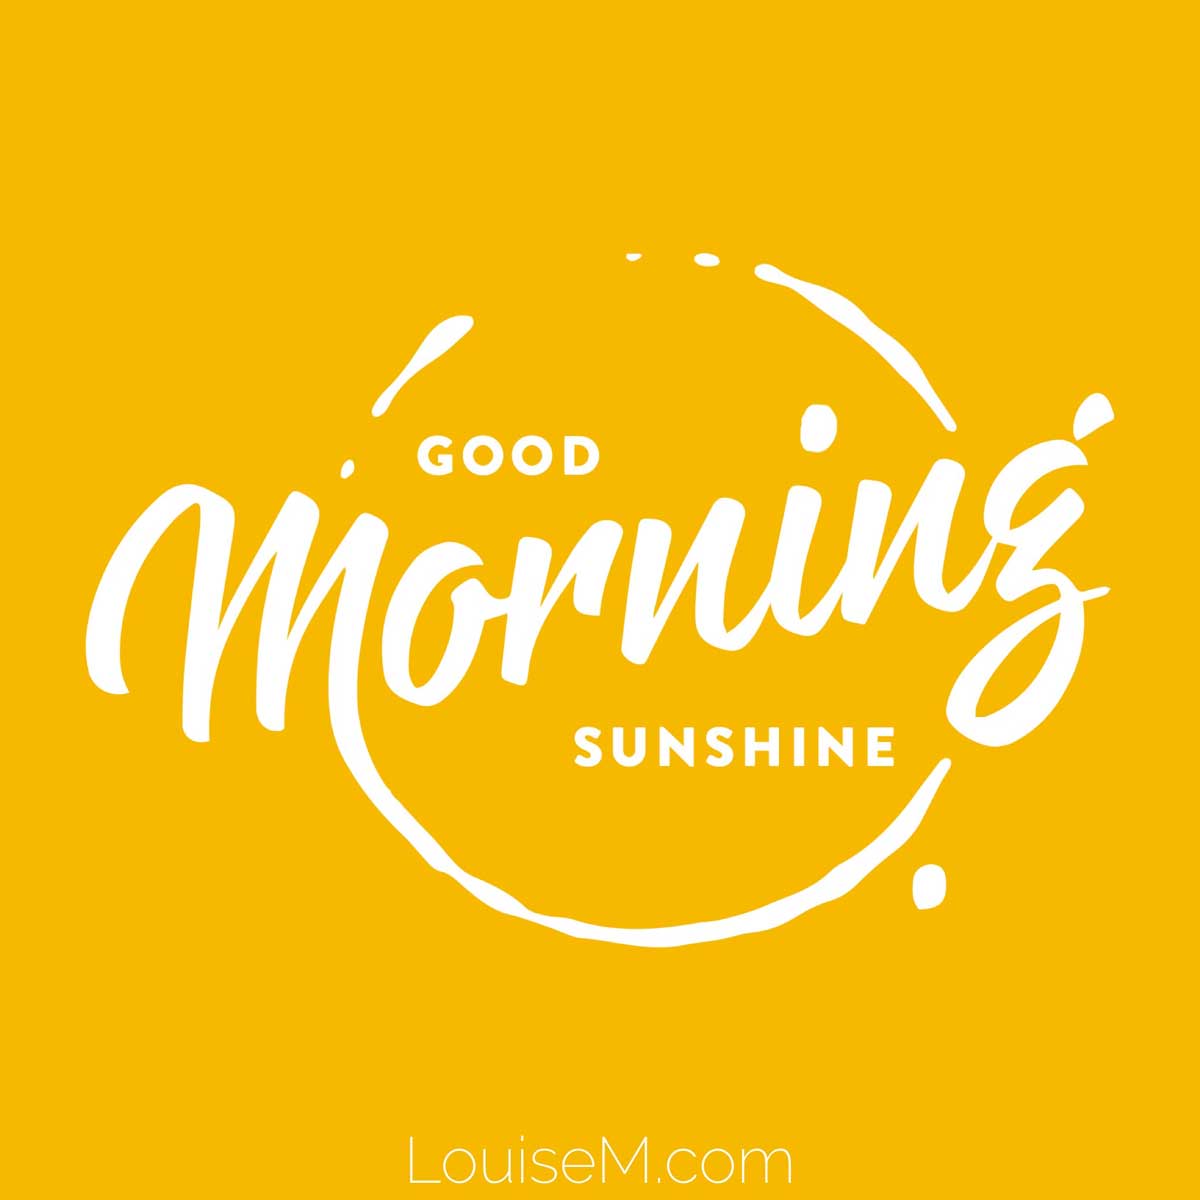 yellow orange graphic has type in a circle saying good morning sunshine.